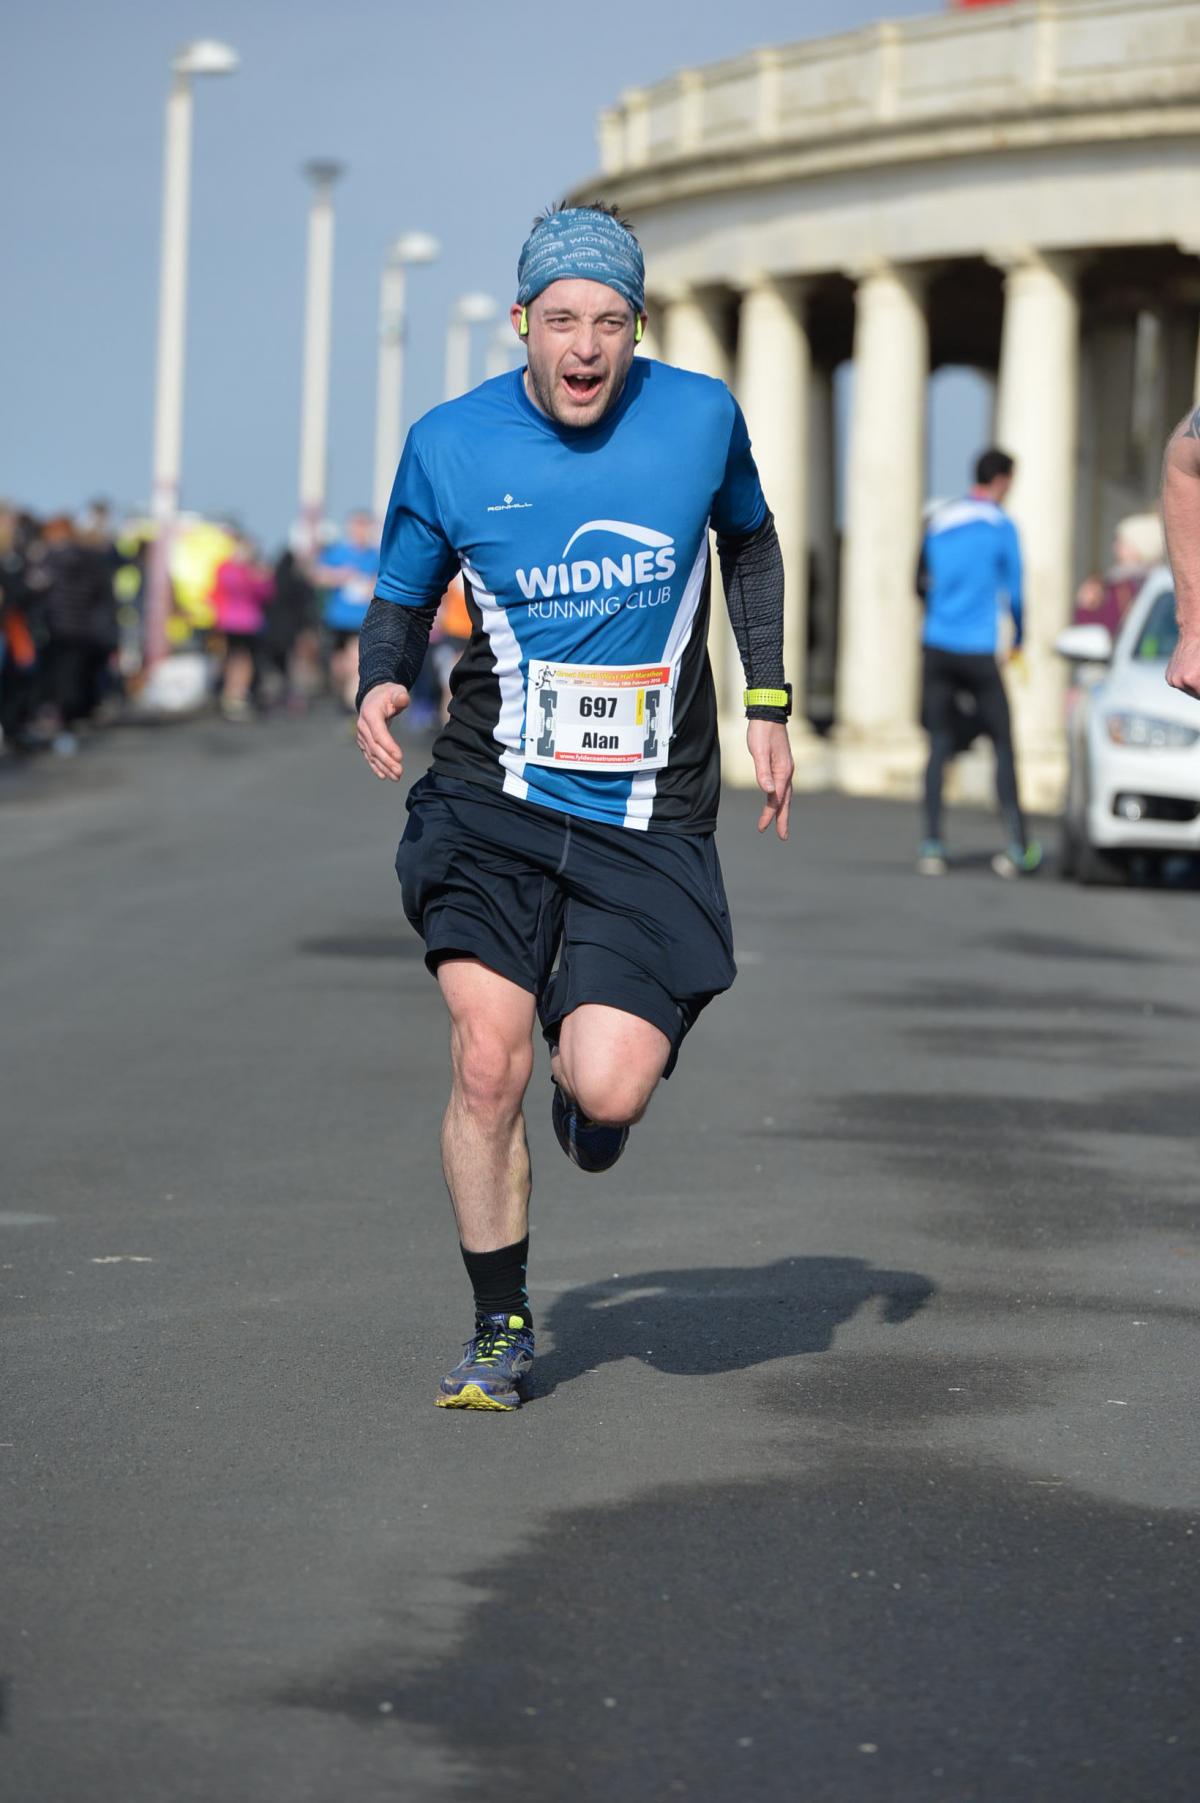 London Marathon runner inspired by dad | Runcorn and Widnes World